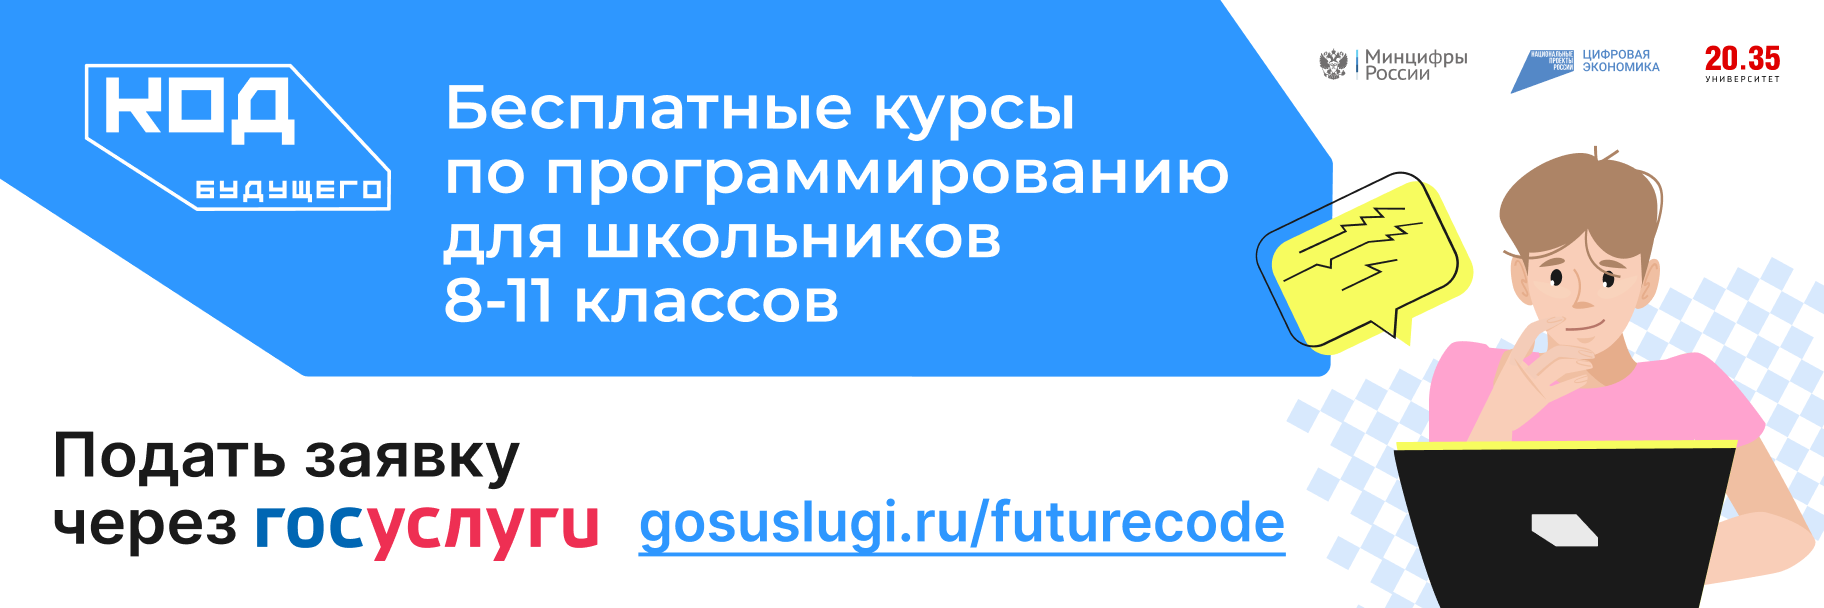 Код будущего. Проект код будущего. Федеральный проект код будущего. Код будущего для школьников госуслуги. Код будущего 3 модуль